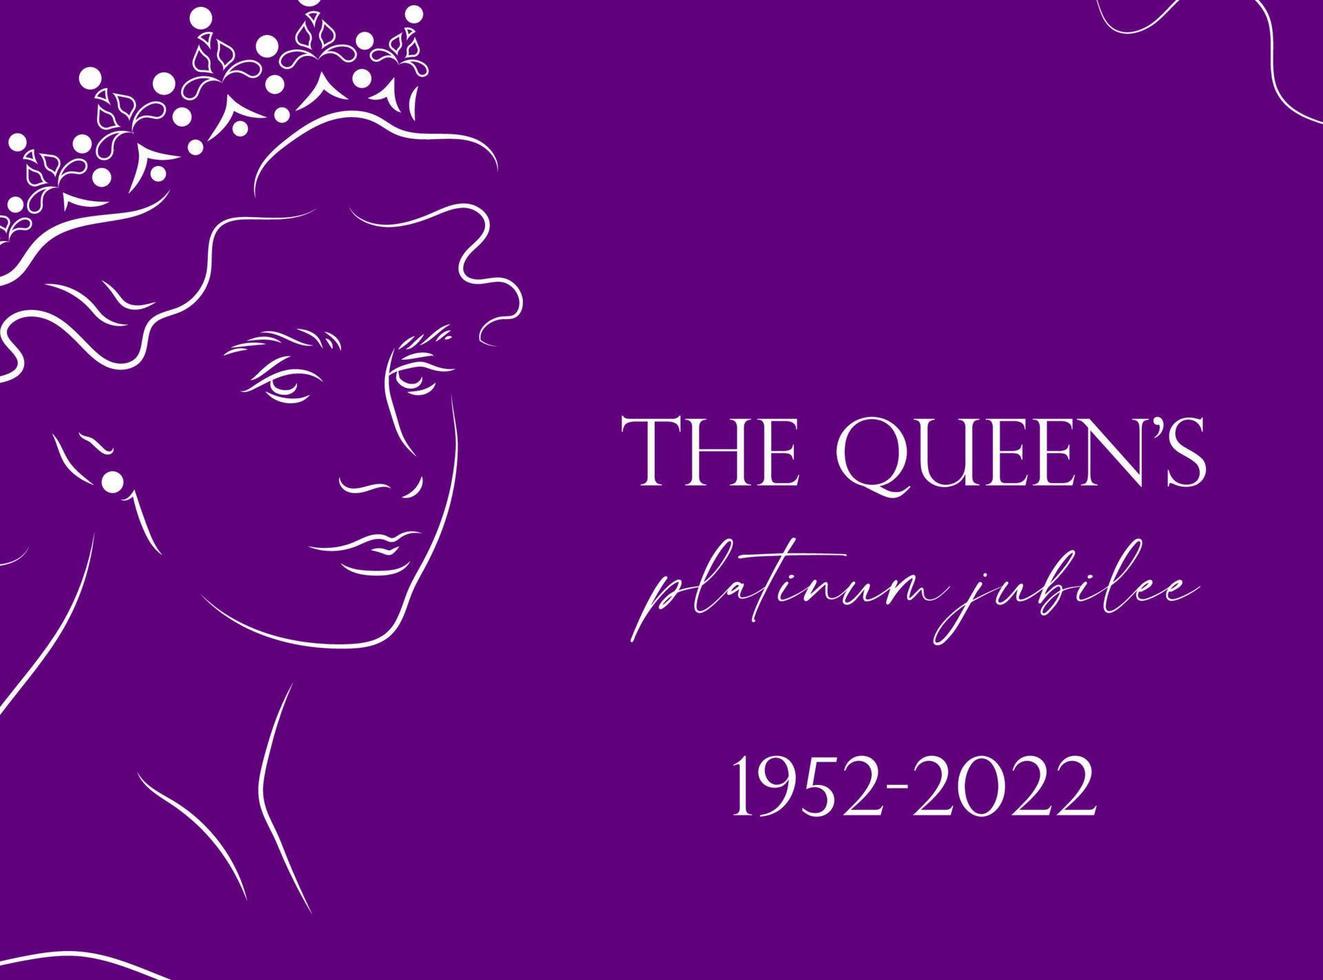 striscione celebrativo dei 70 anni del giubileo di platino della regina con ritratto in linea della regina elisabetta in corona . può essere utilizzato per banner, flayer, biglietti, inviti, social media, ecc. vettore